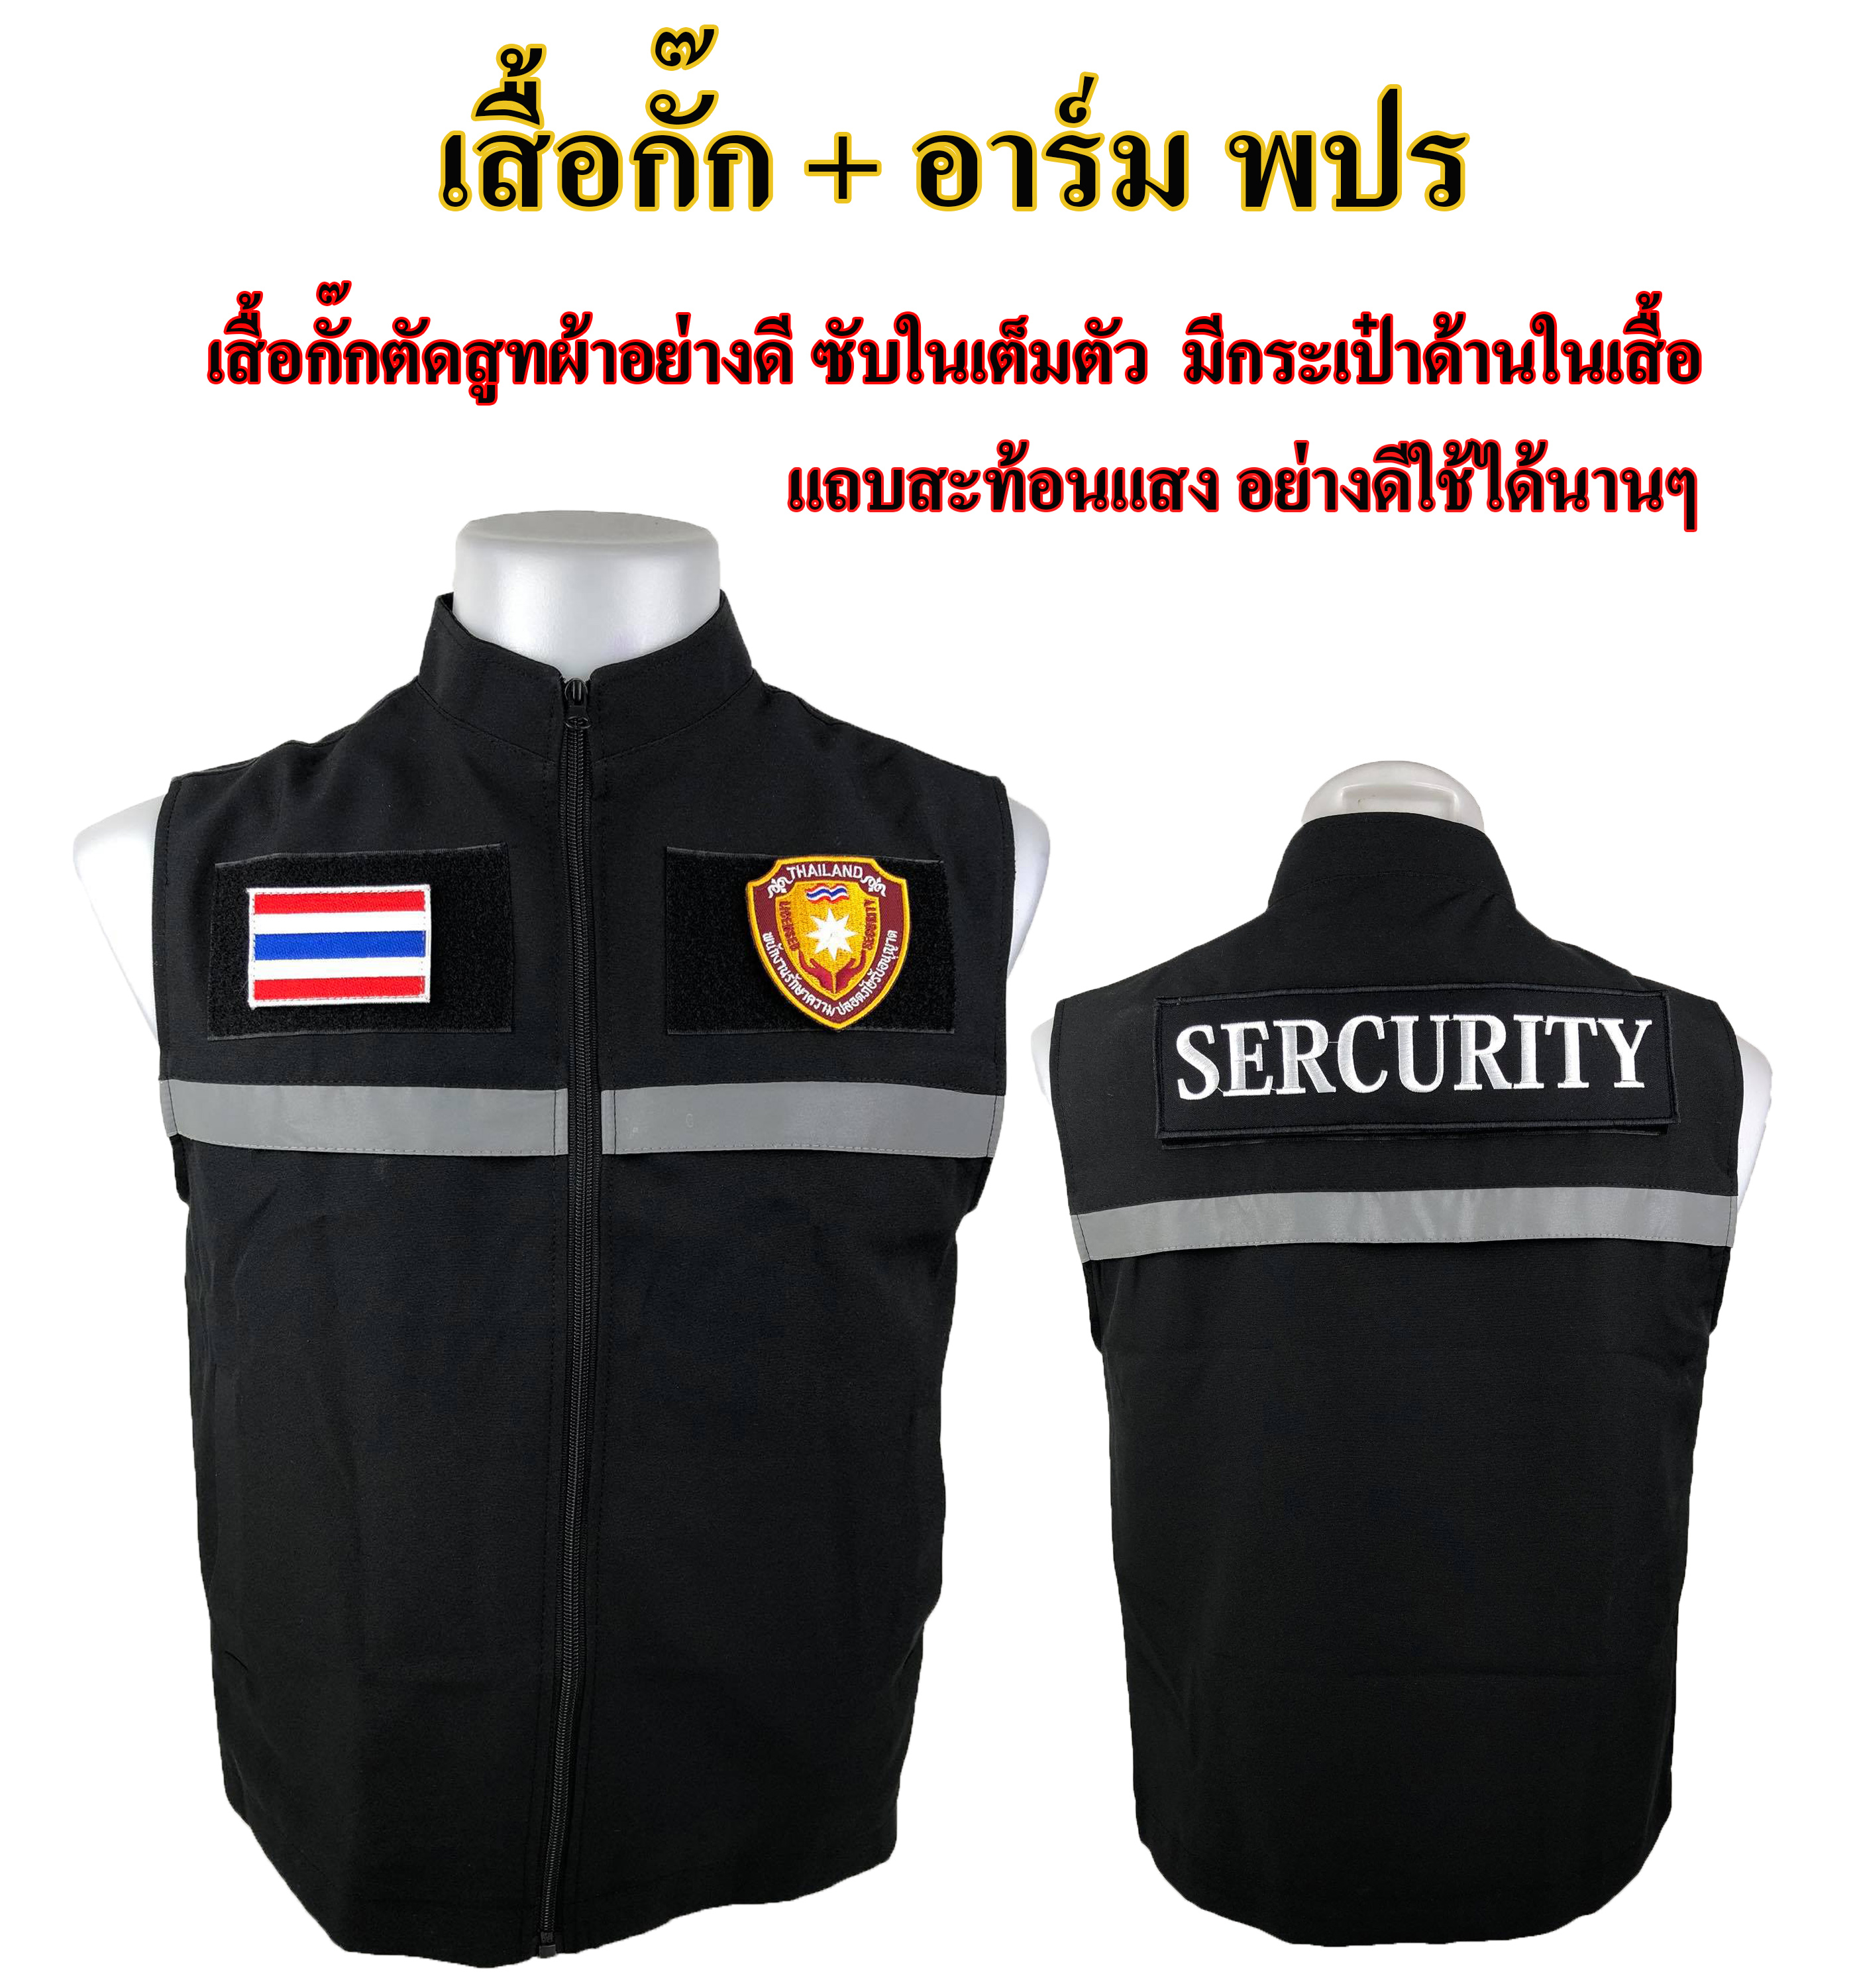 เสื้อกั๊ก พนักงานรักษาความปลอดภัย พปร. รปภ. (SECURITY) ผ้าสูทอย่างดีซับในเต็มตัว งานเสื้อผลิตไทยตัดเย็บเนี๊ยบมาก